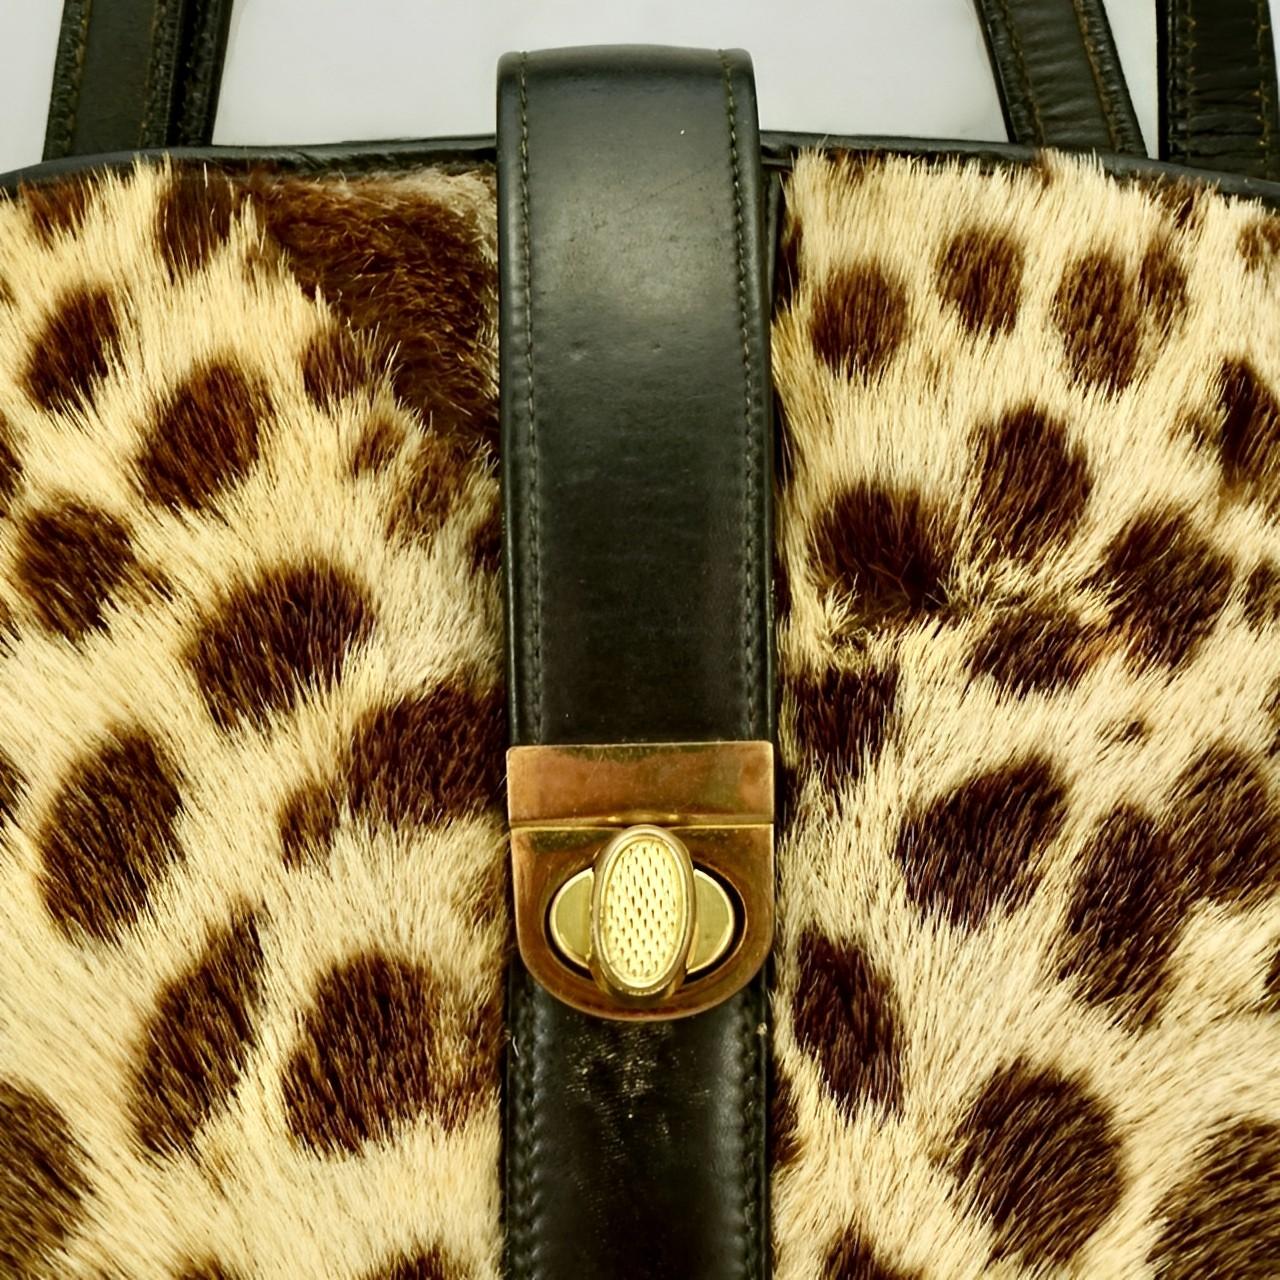 Fabuleux sac à main en cuir noir et fourrure tachetée (peut-être du poney), avec des accessoires plaqués or.

Il mesure 26,5 cm de large à la base, 23,4 cm de haut, environ 5,5 cm de profondeur et sa sangle tombe à 12,5 cm.

L'intérieur est doublé